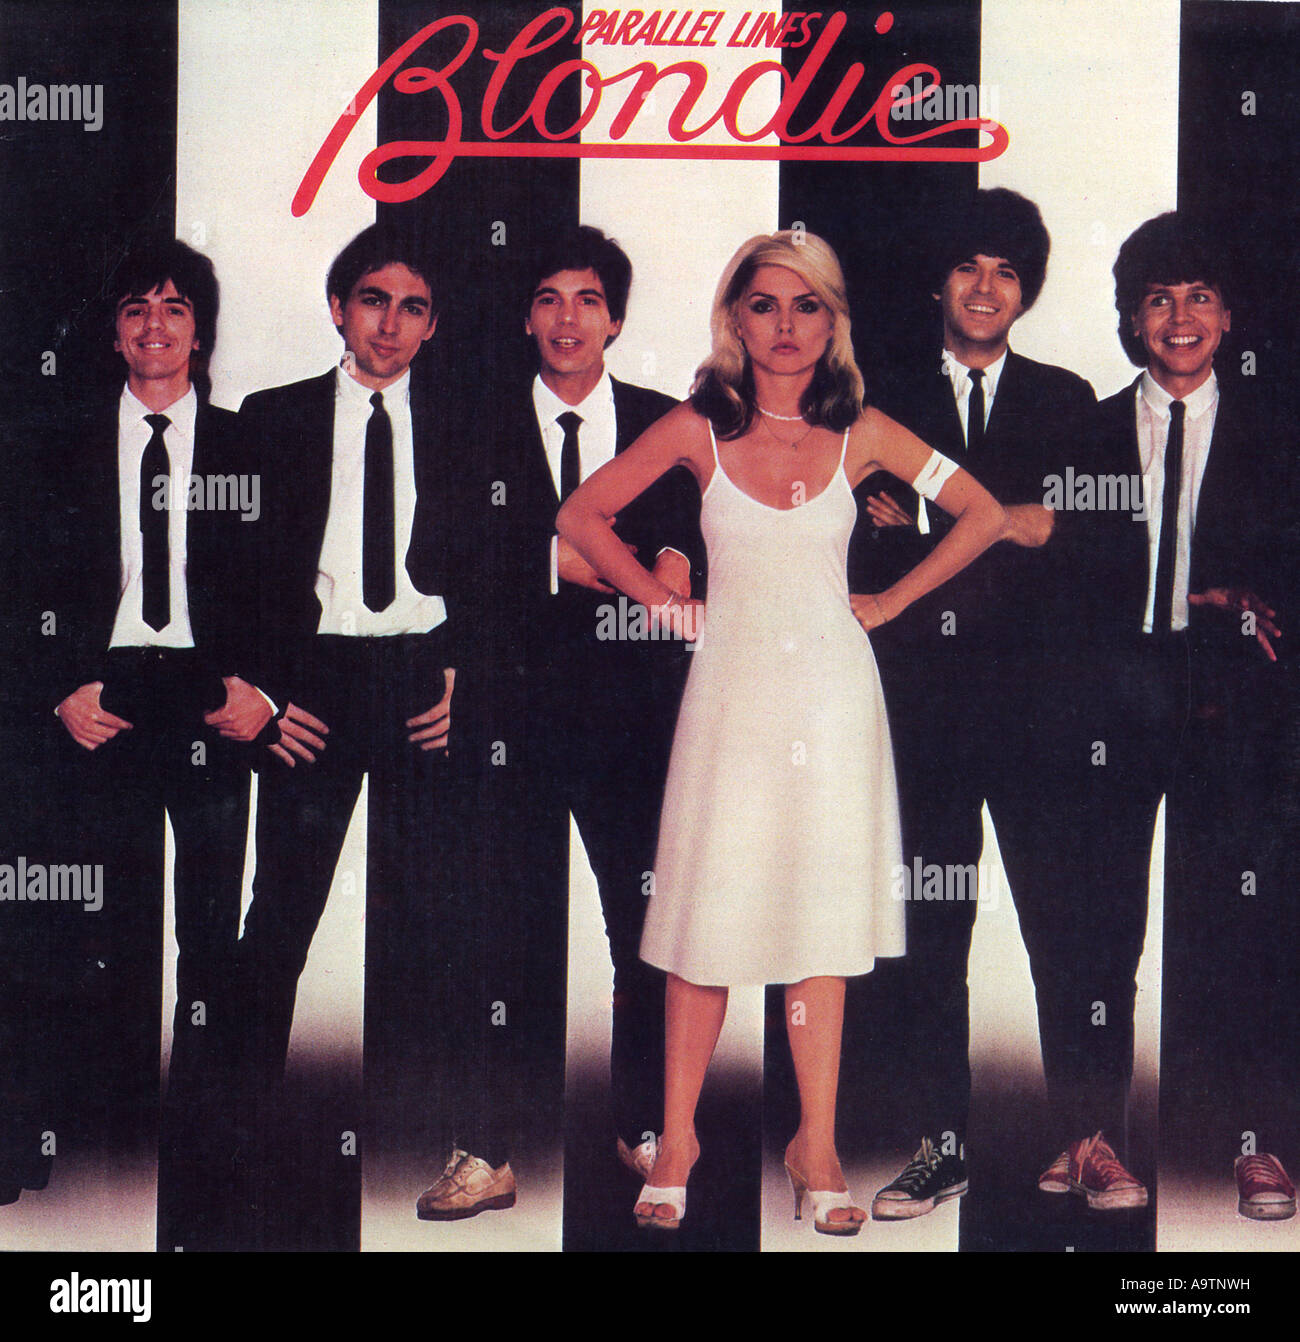 BLONDIE - Cover von 1978 parallelen Linien Album Stockfoto